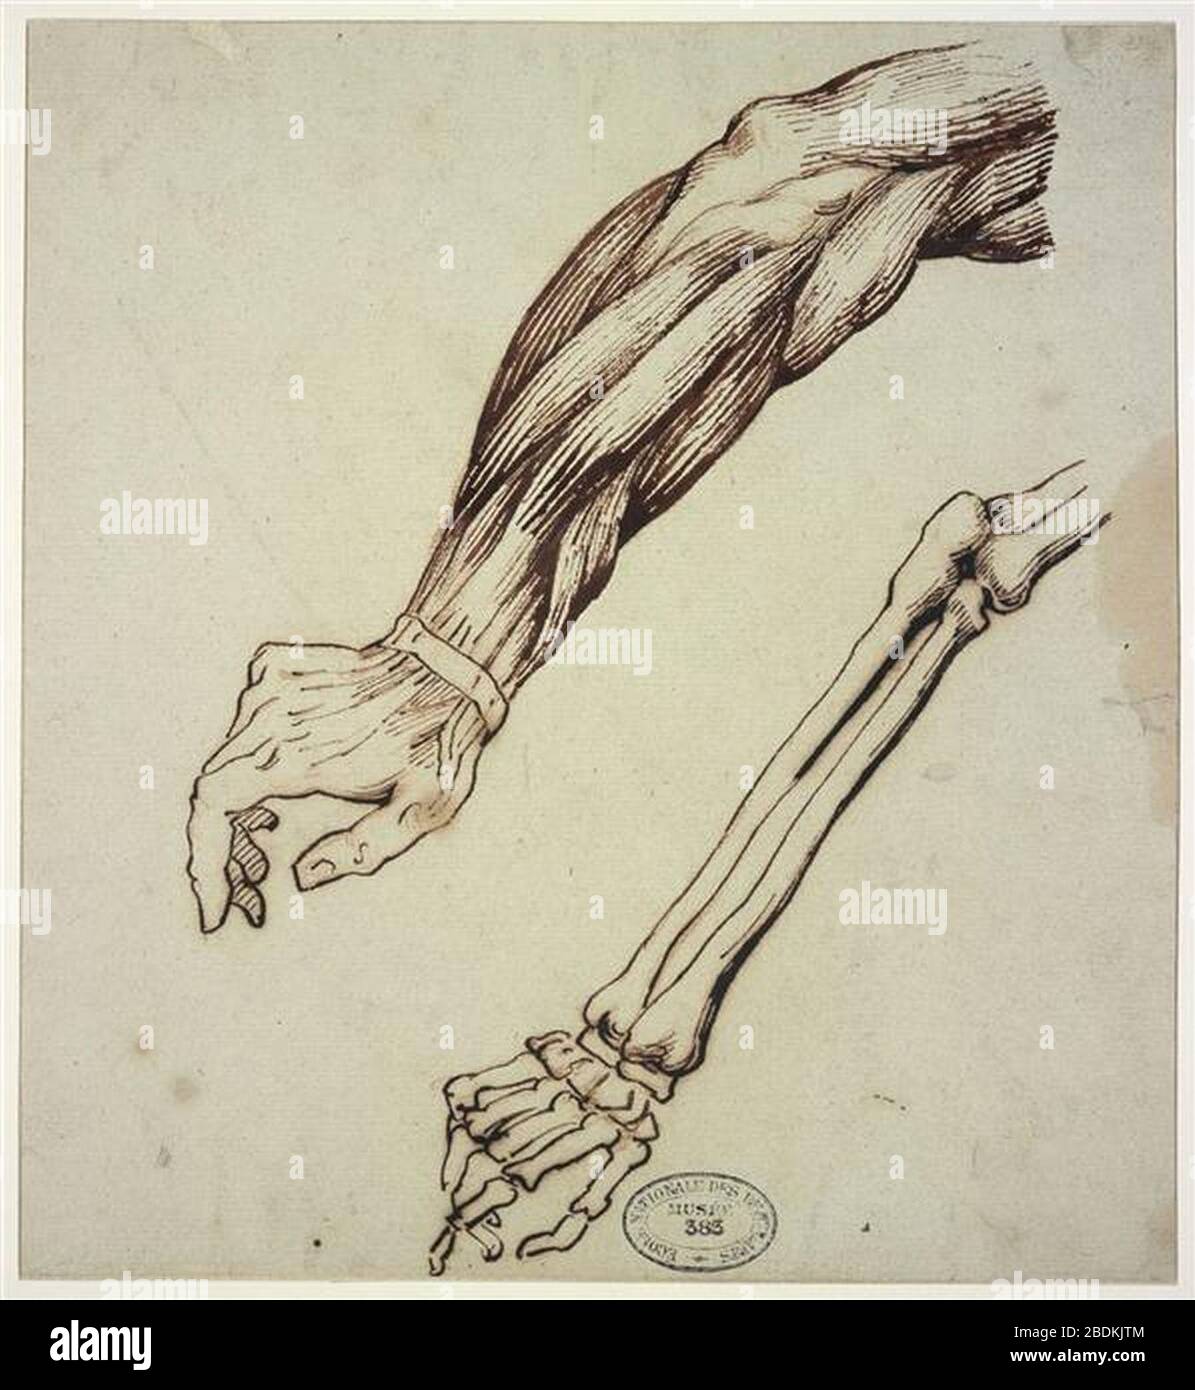 ANATOMIE DE L'AVANT-BRAS  Body anatomy, Anatomy, Anatomy and physiology